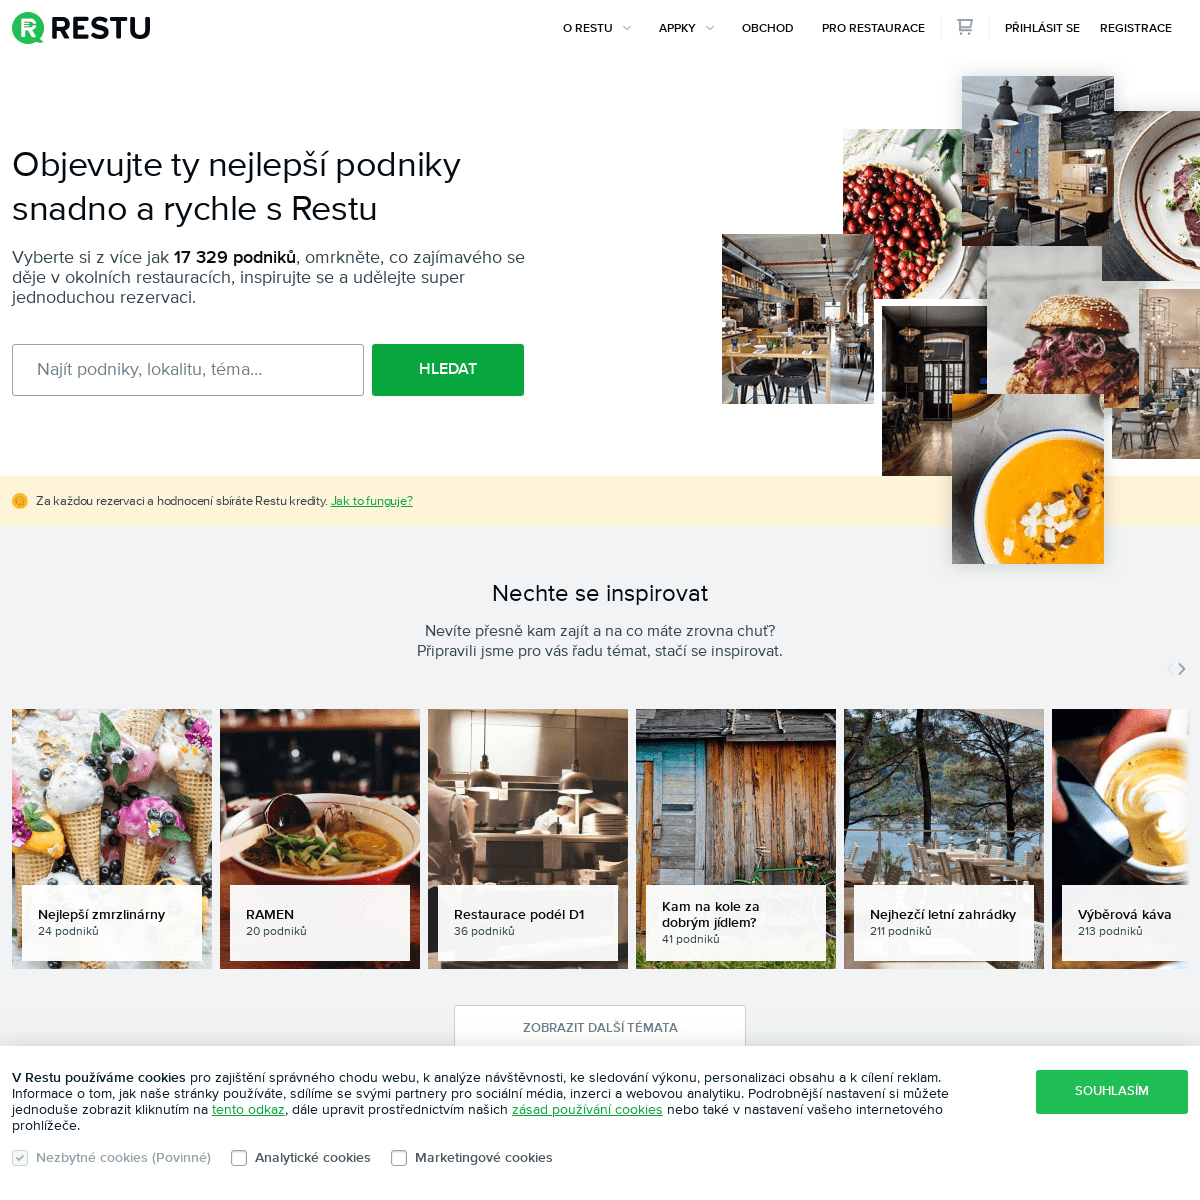 Největší online průvodce po restauracích | Restu.cz